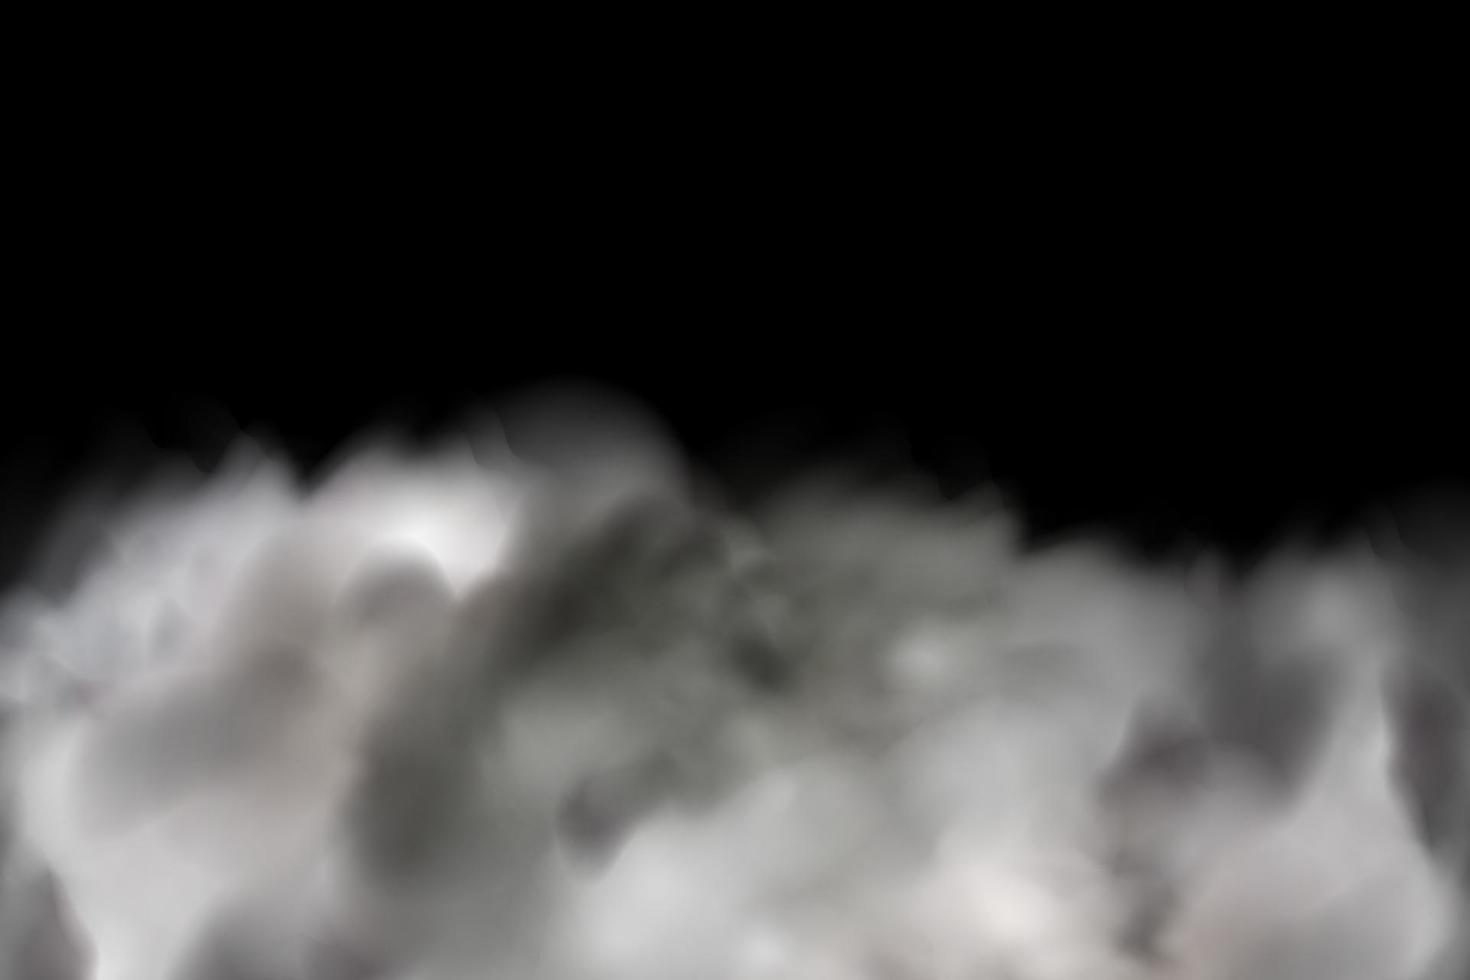 bianca vettore nuvolosità ,nebbia o Fumo su buio scacchi sfondo.nuvoloso cielo o smog al di sopra di il città.vettore illustrazione.